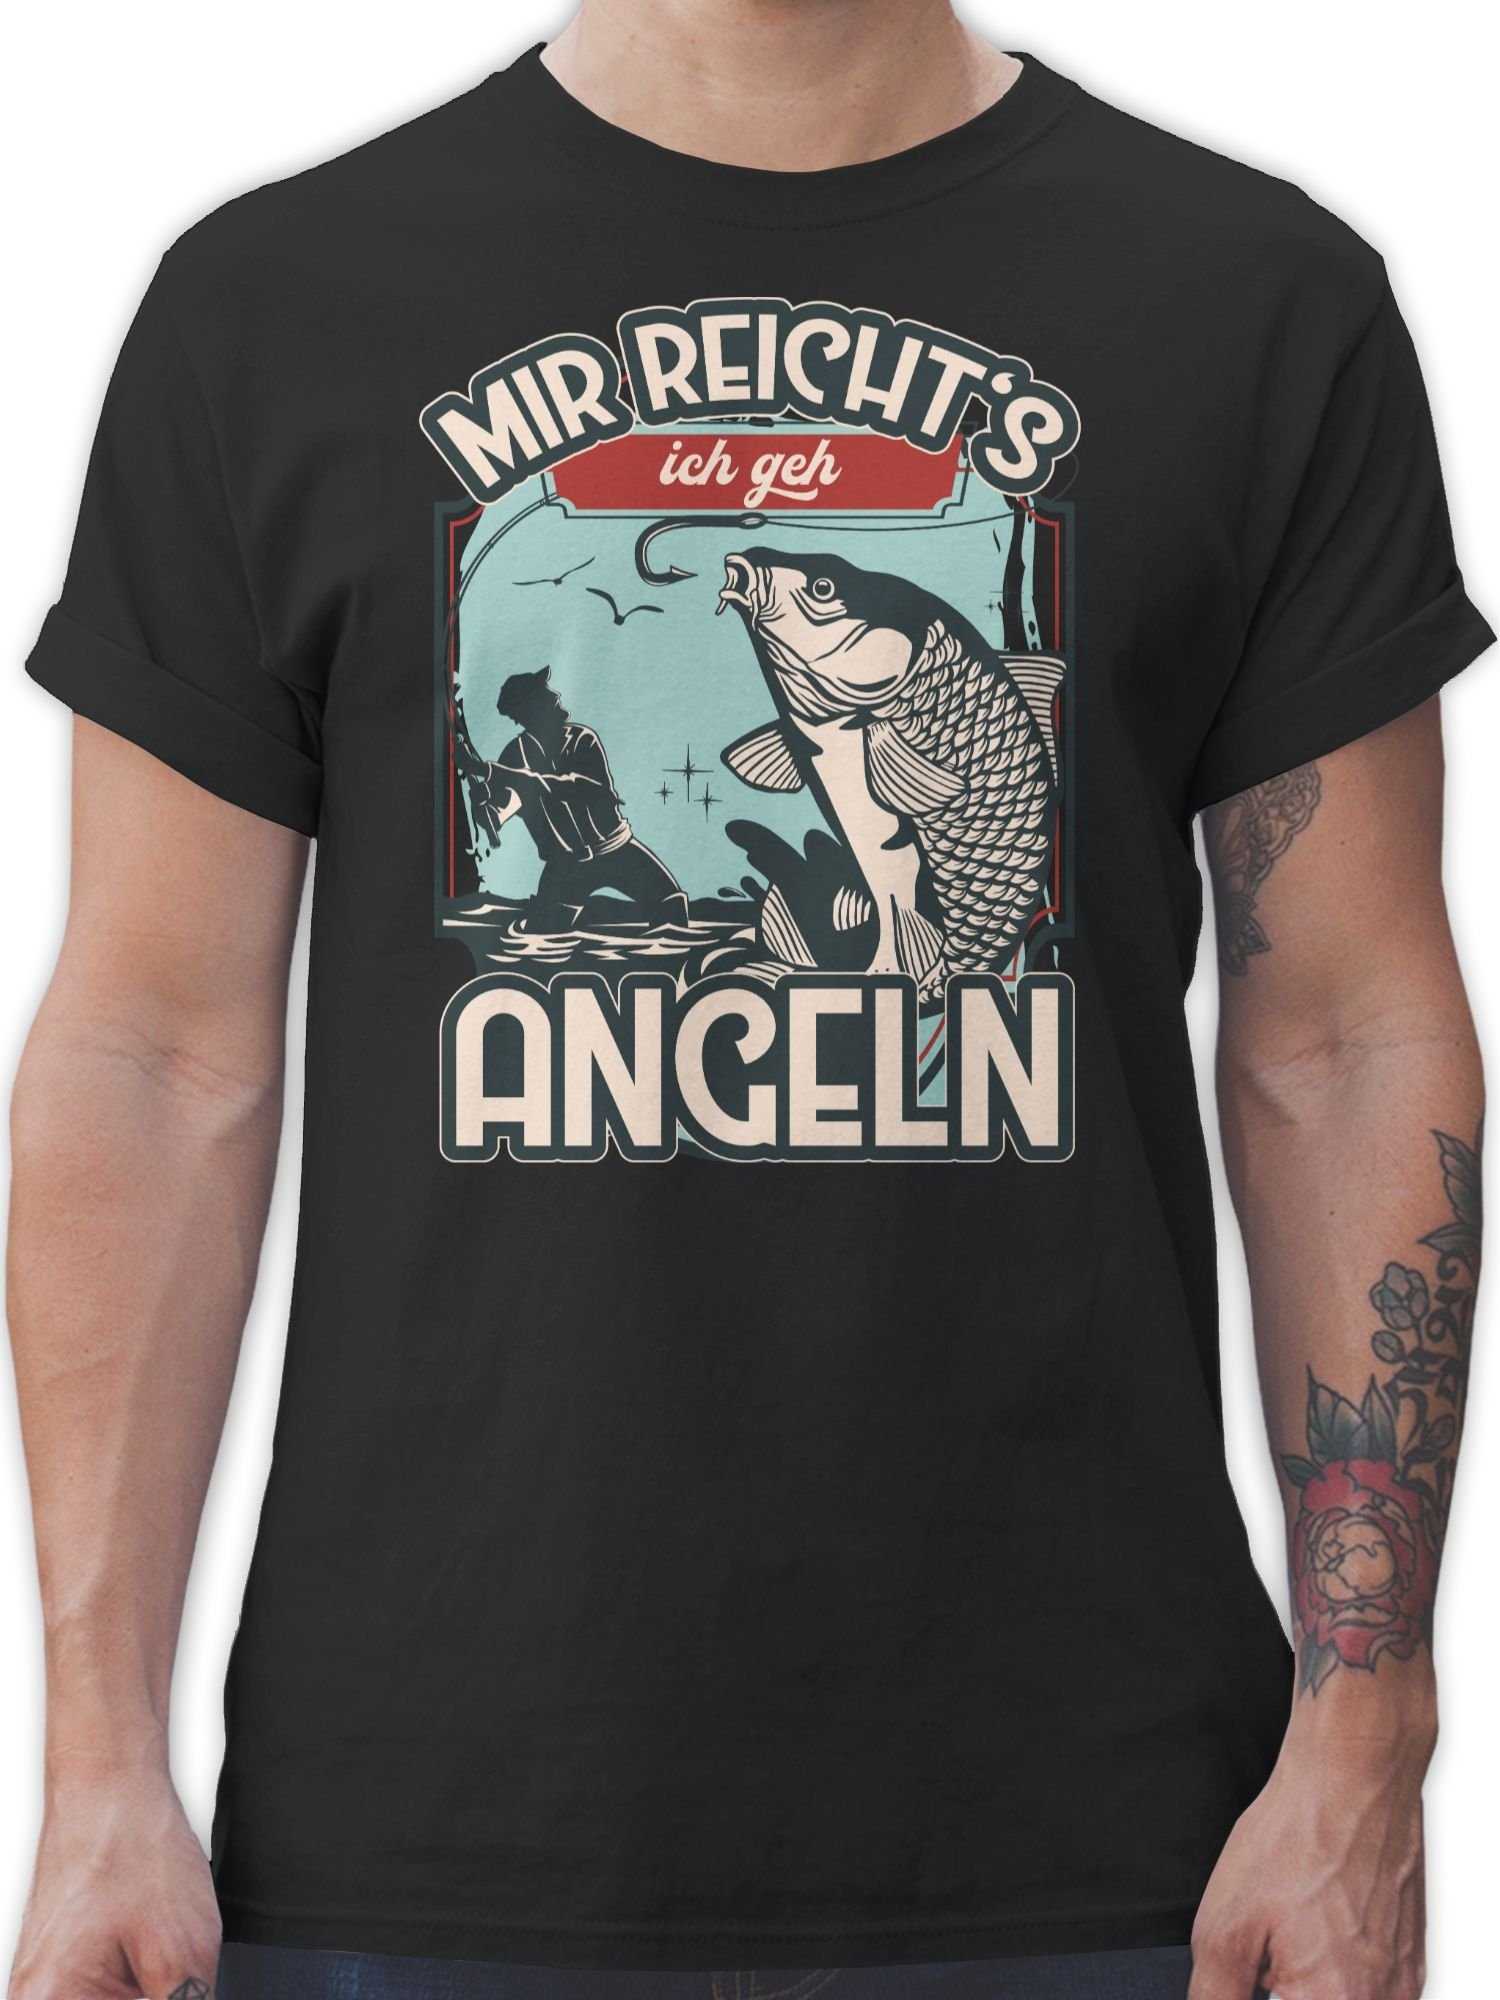 Shirtracer T-Shirt Mir reicht's ich geh angeln - Angler Geschenke - Herren Premium T-Shirt angelshirts - t shirt angeln männer lustig - angler geschenke 02 Schwarz